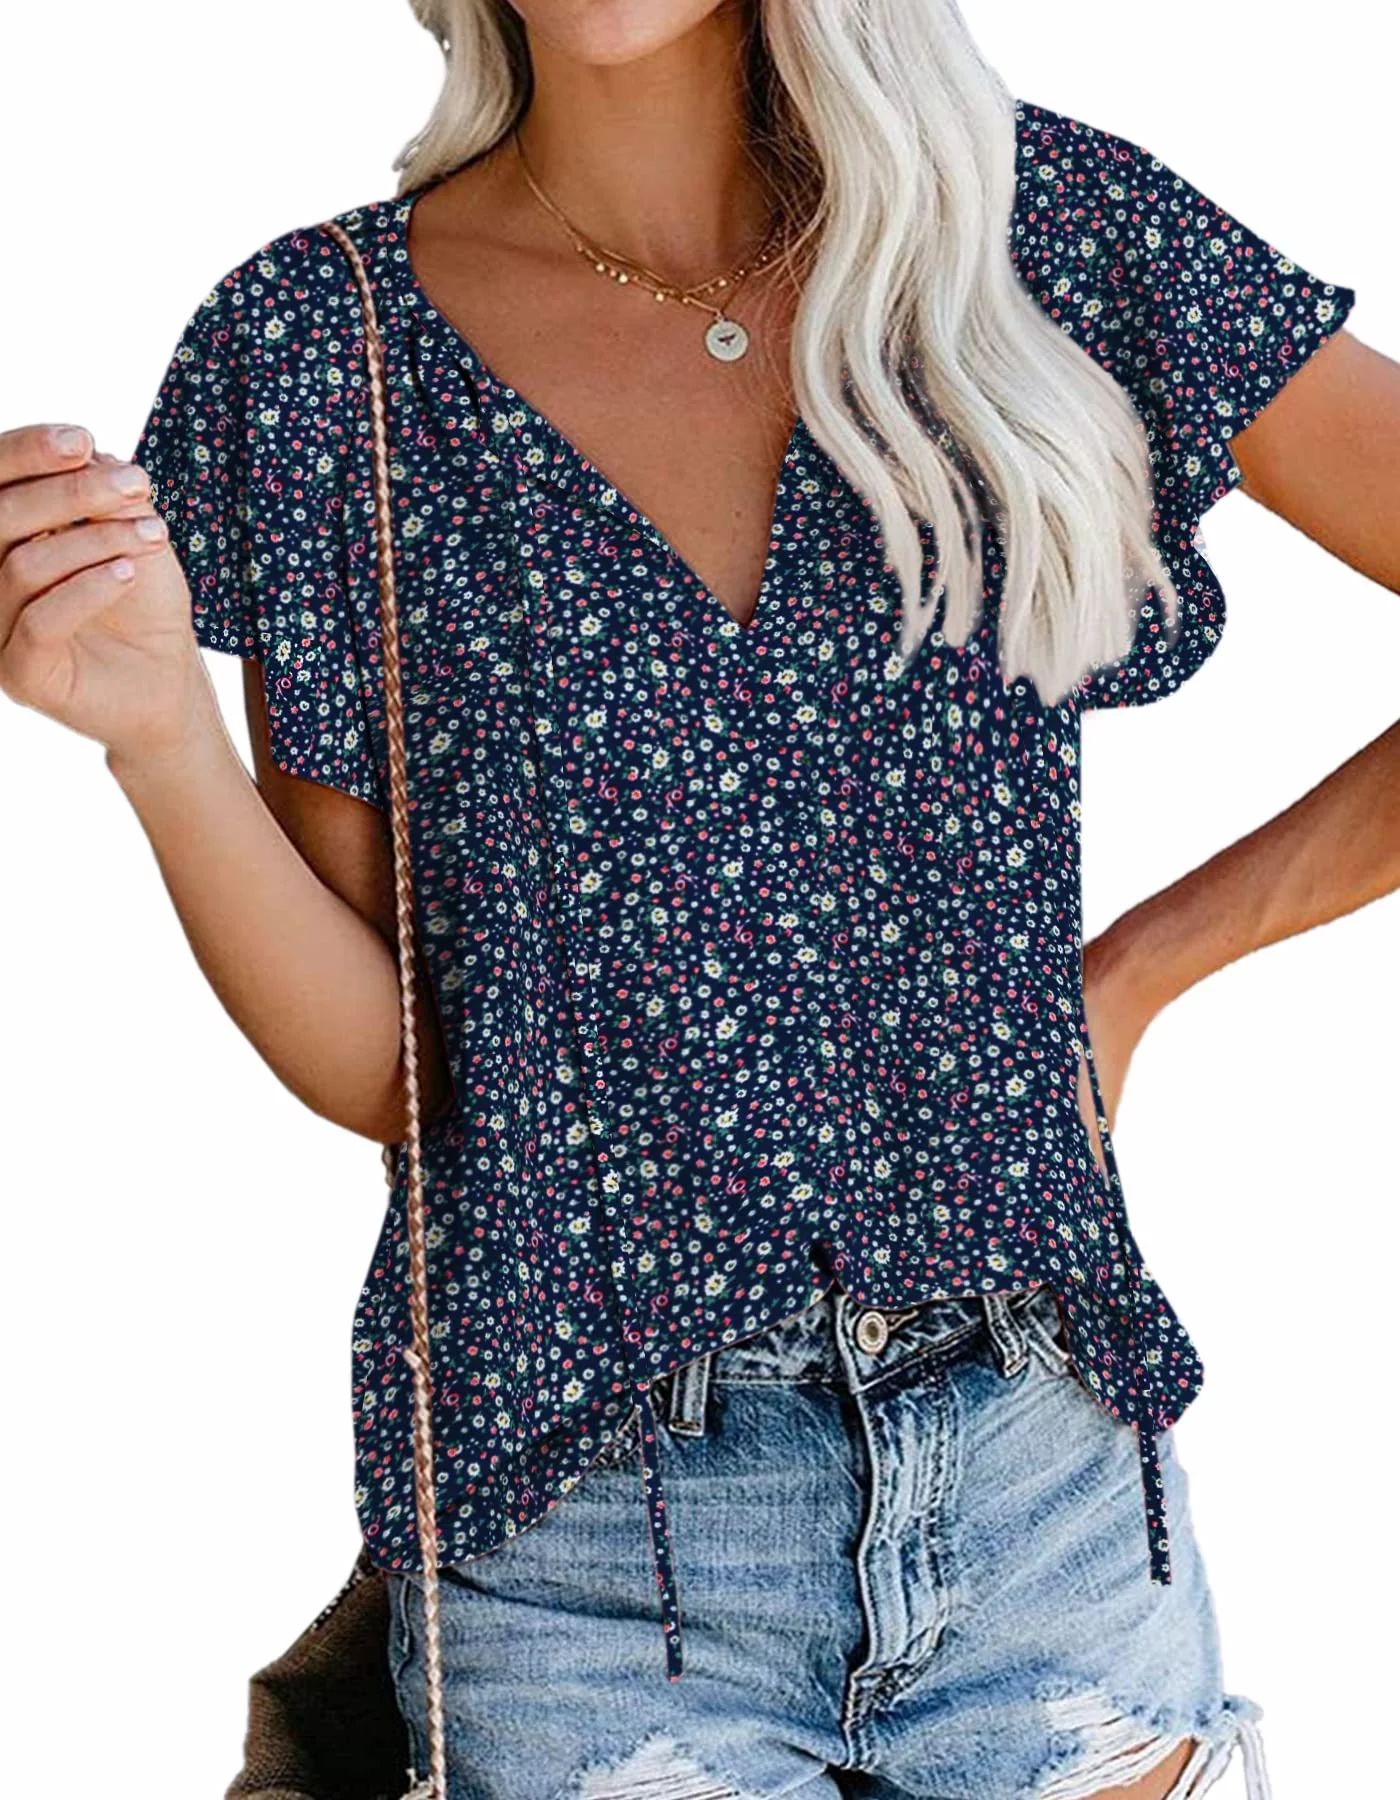 Fantaslook Blouses for Women Floral Boho Summer Tops V Neck Short Sleeve Shirts | Walmart (US)